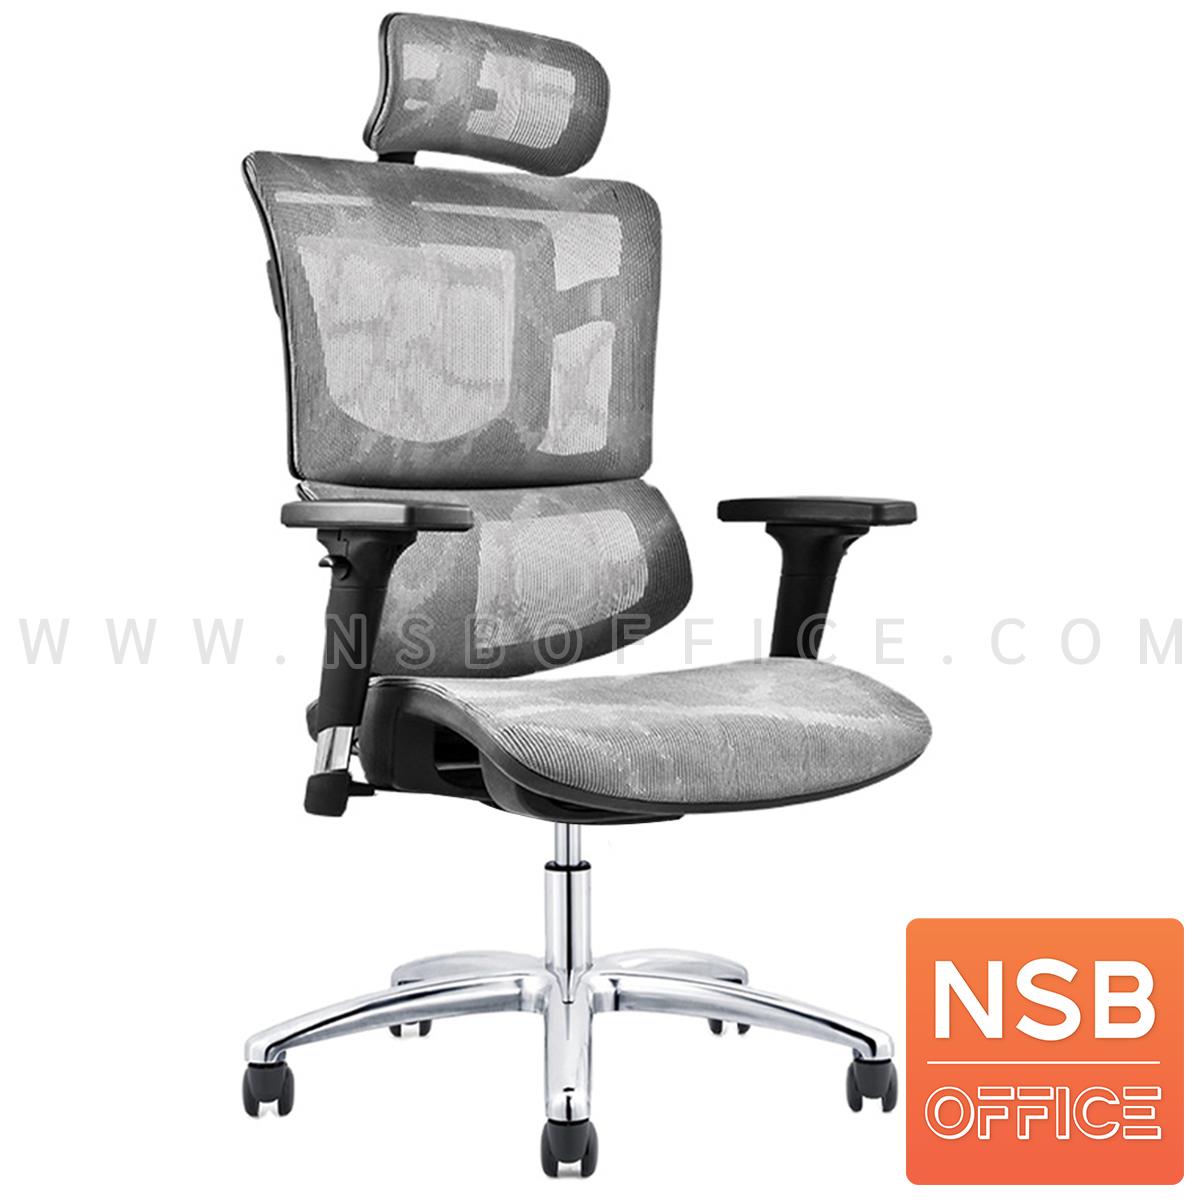 B28A118:เก้าอี้เพื่อสุขภาพ รุ่น Ergonomic trendy-A  เคลื่อนที่ 4 ระบบ ขาอลูมินั่ม